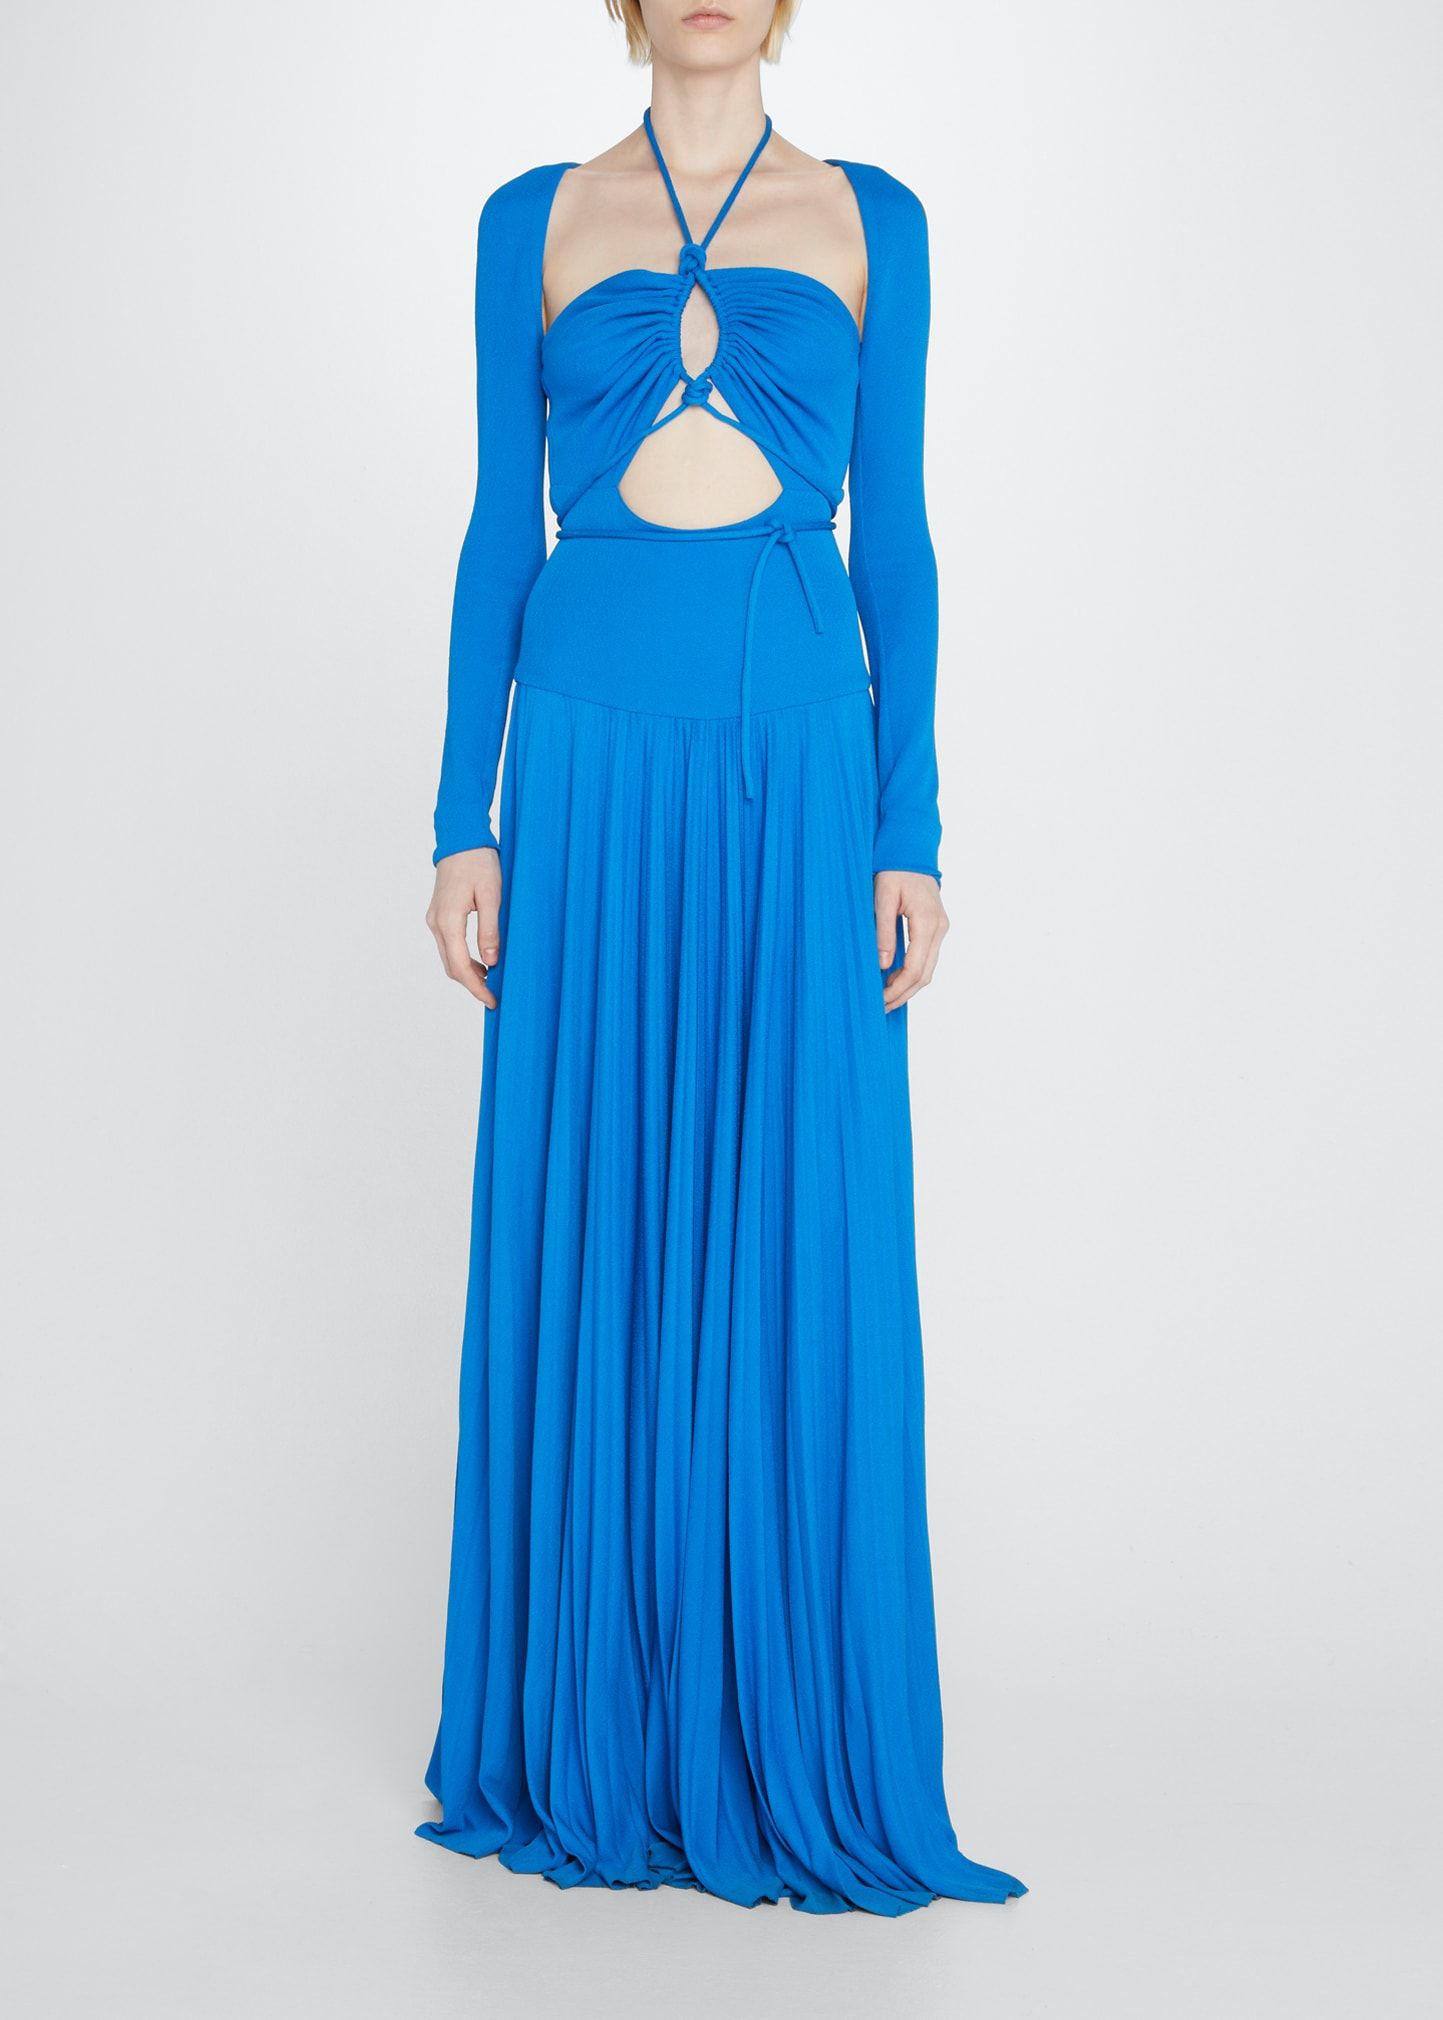 Proenza Schouler Cutout Halter Pleated Jersey Maxi Dress | Bergdorf Goodman